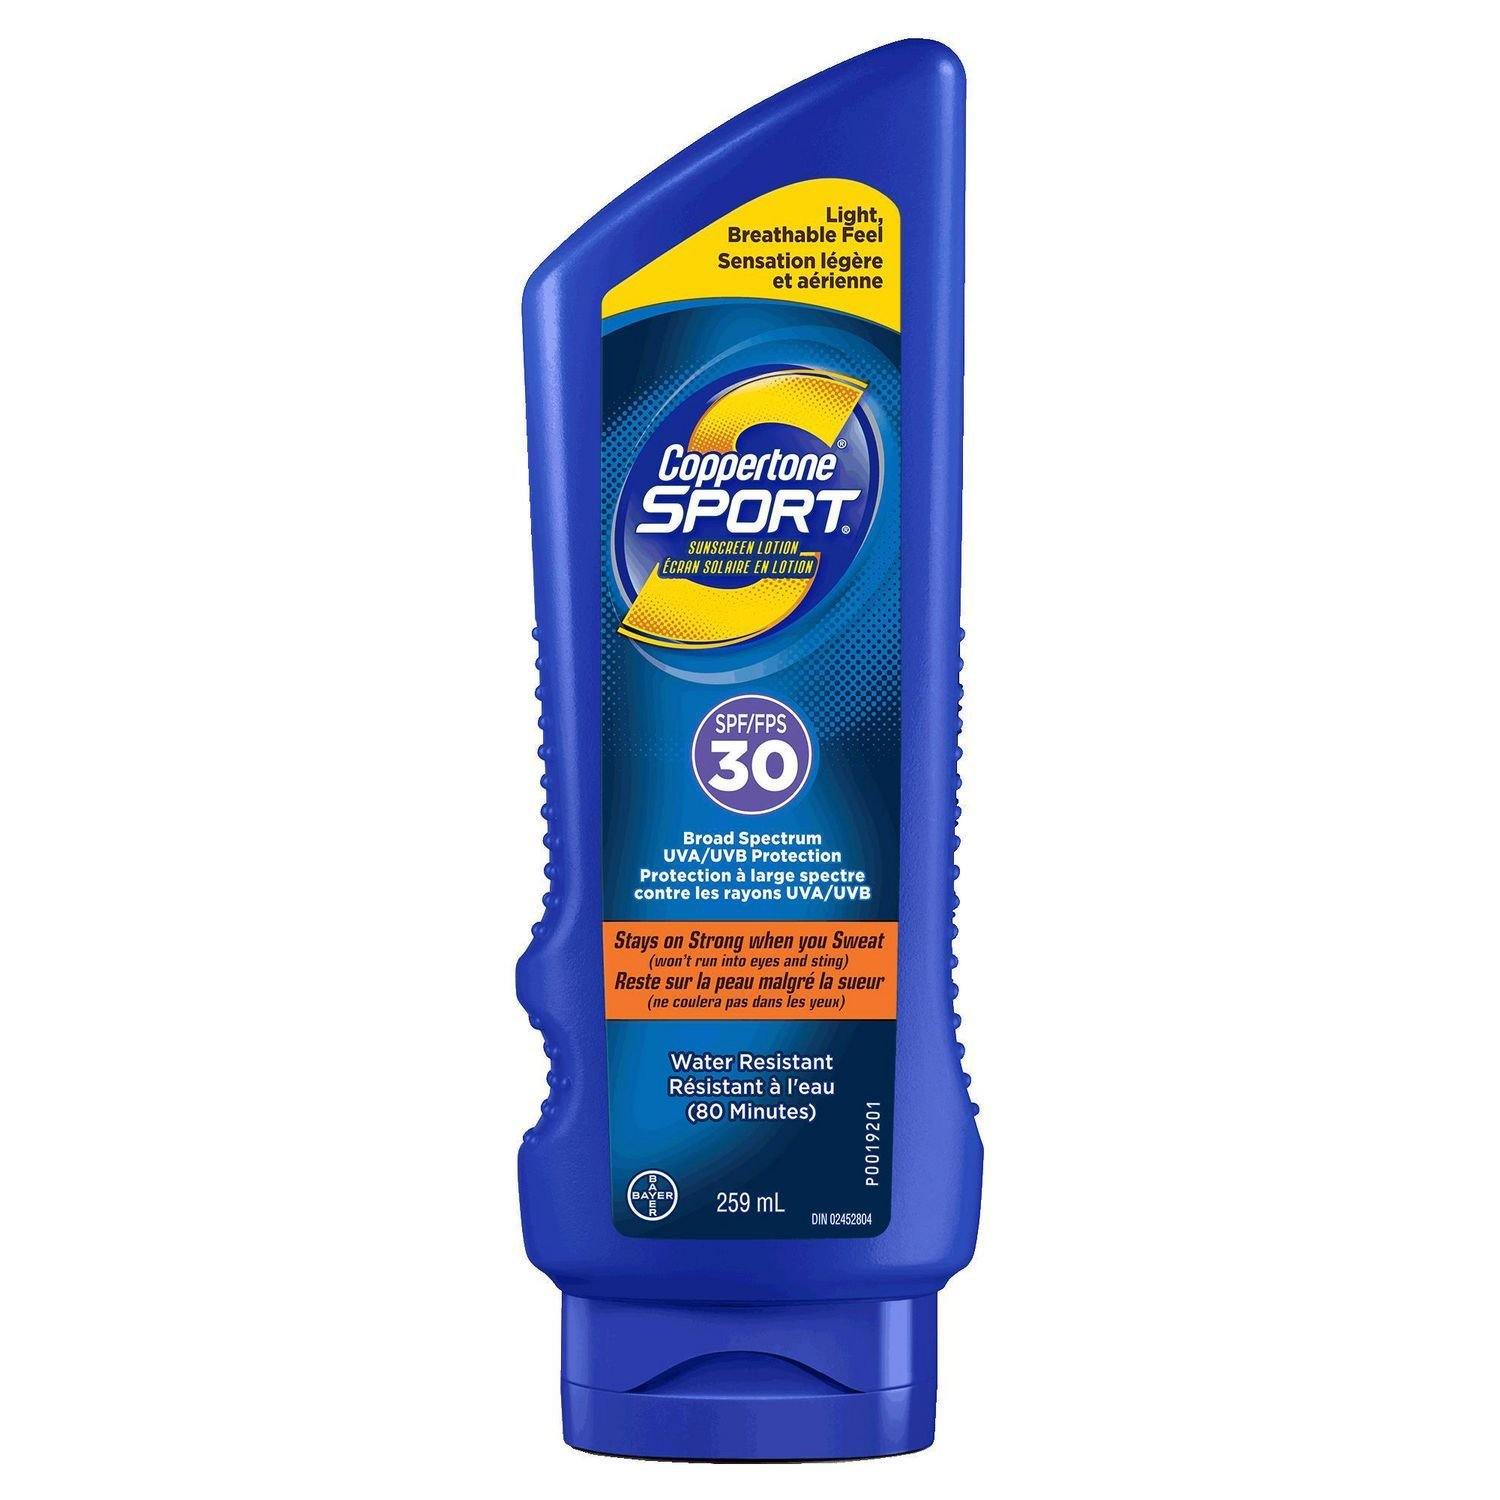 Coppertone Sport SPF 30 Sunscreen